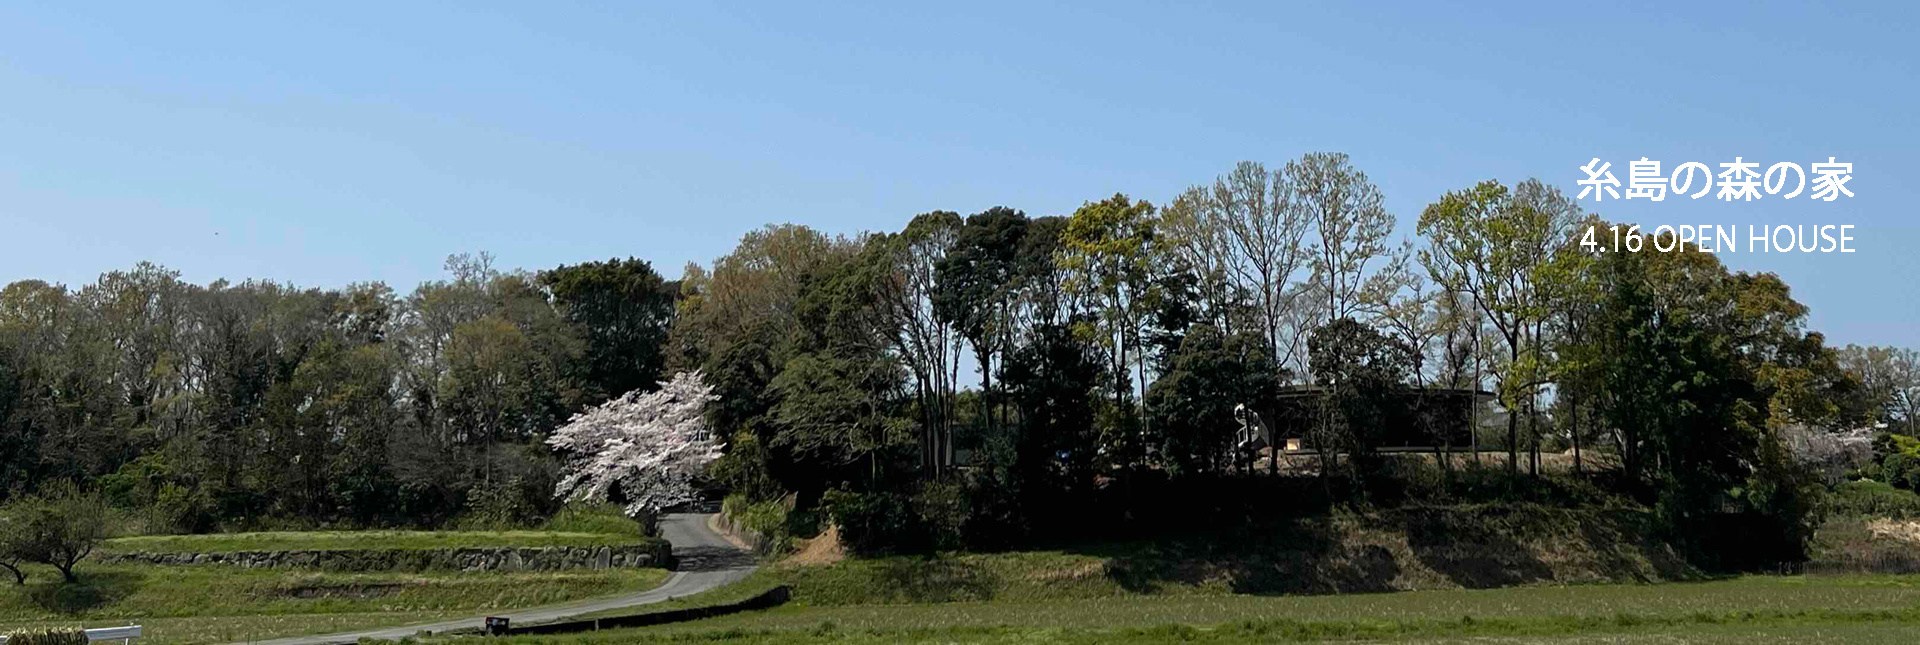 「糸島の森プロジェクト CIRCLE」の完成見学会を開催します。_e0029115_12553709.jpg